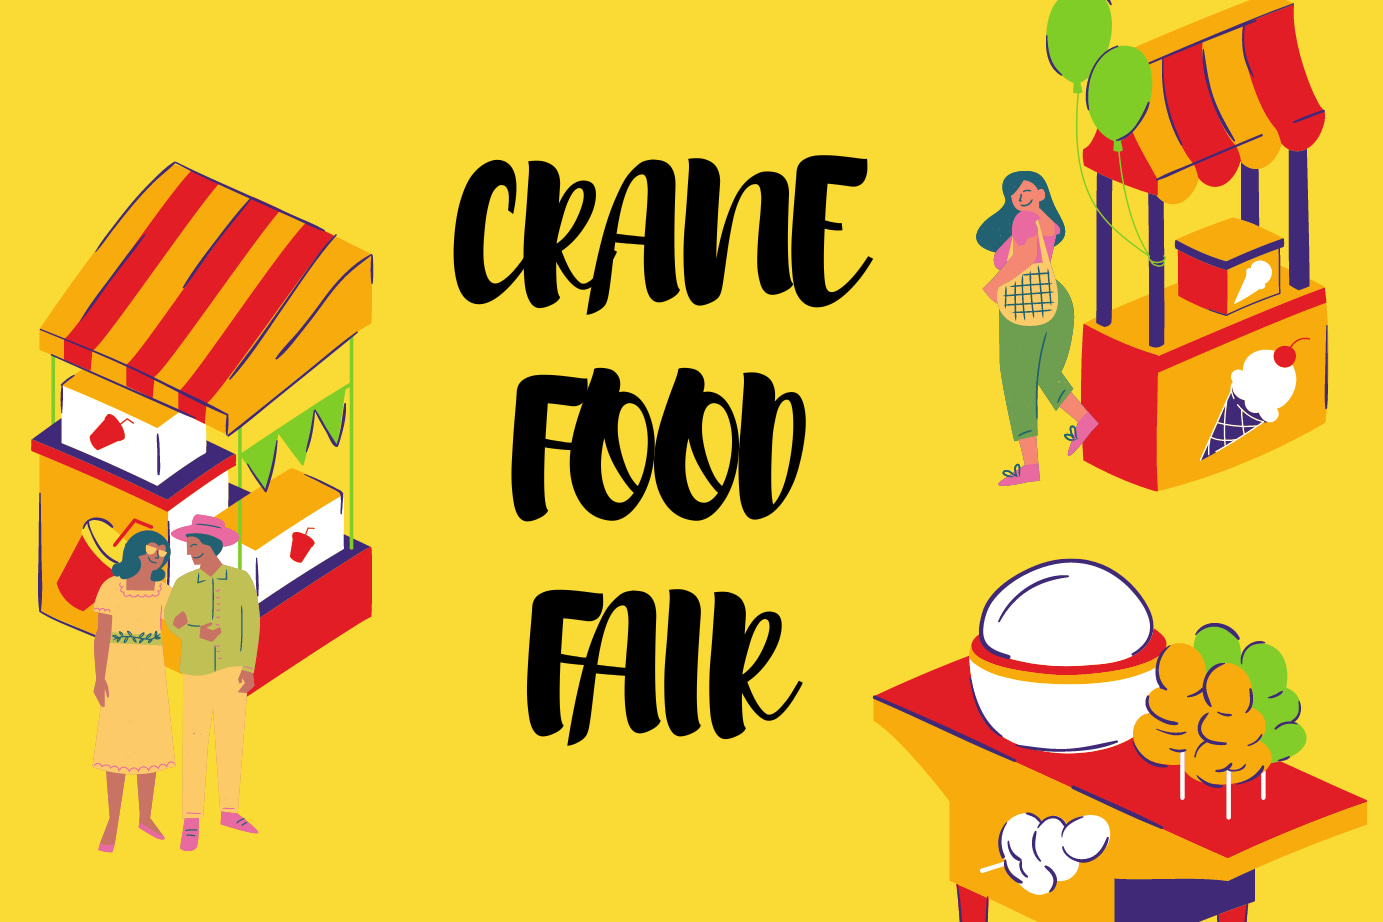 Crane Food Fair